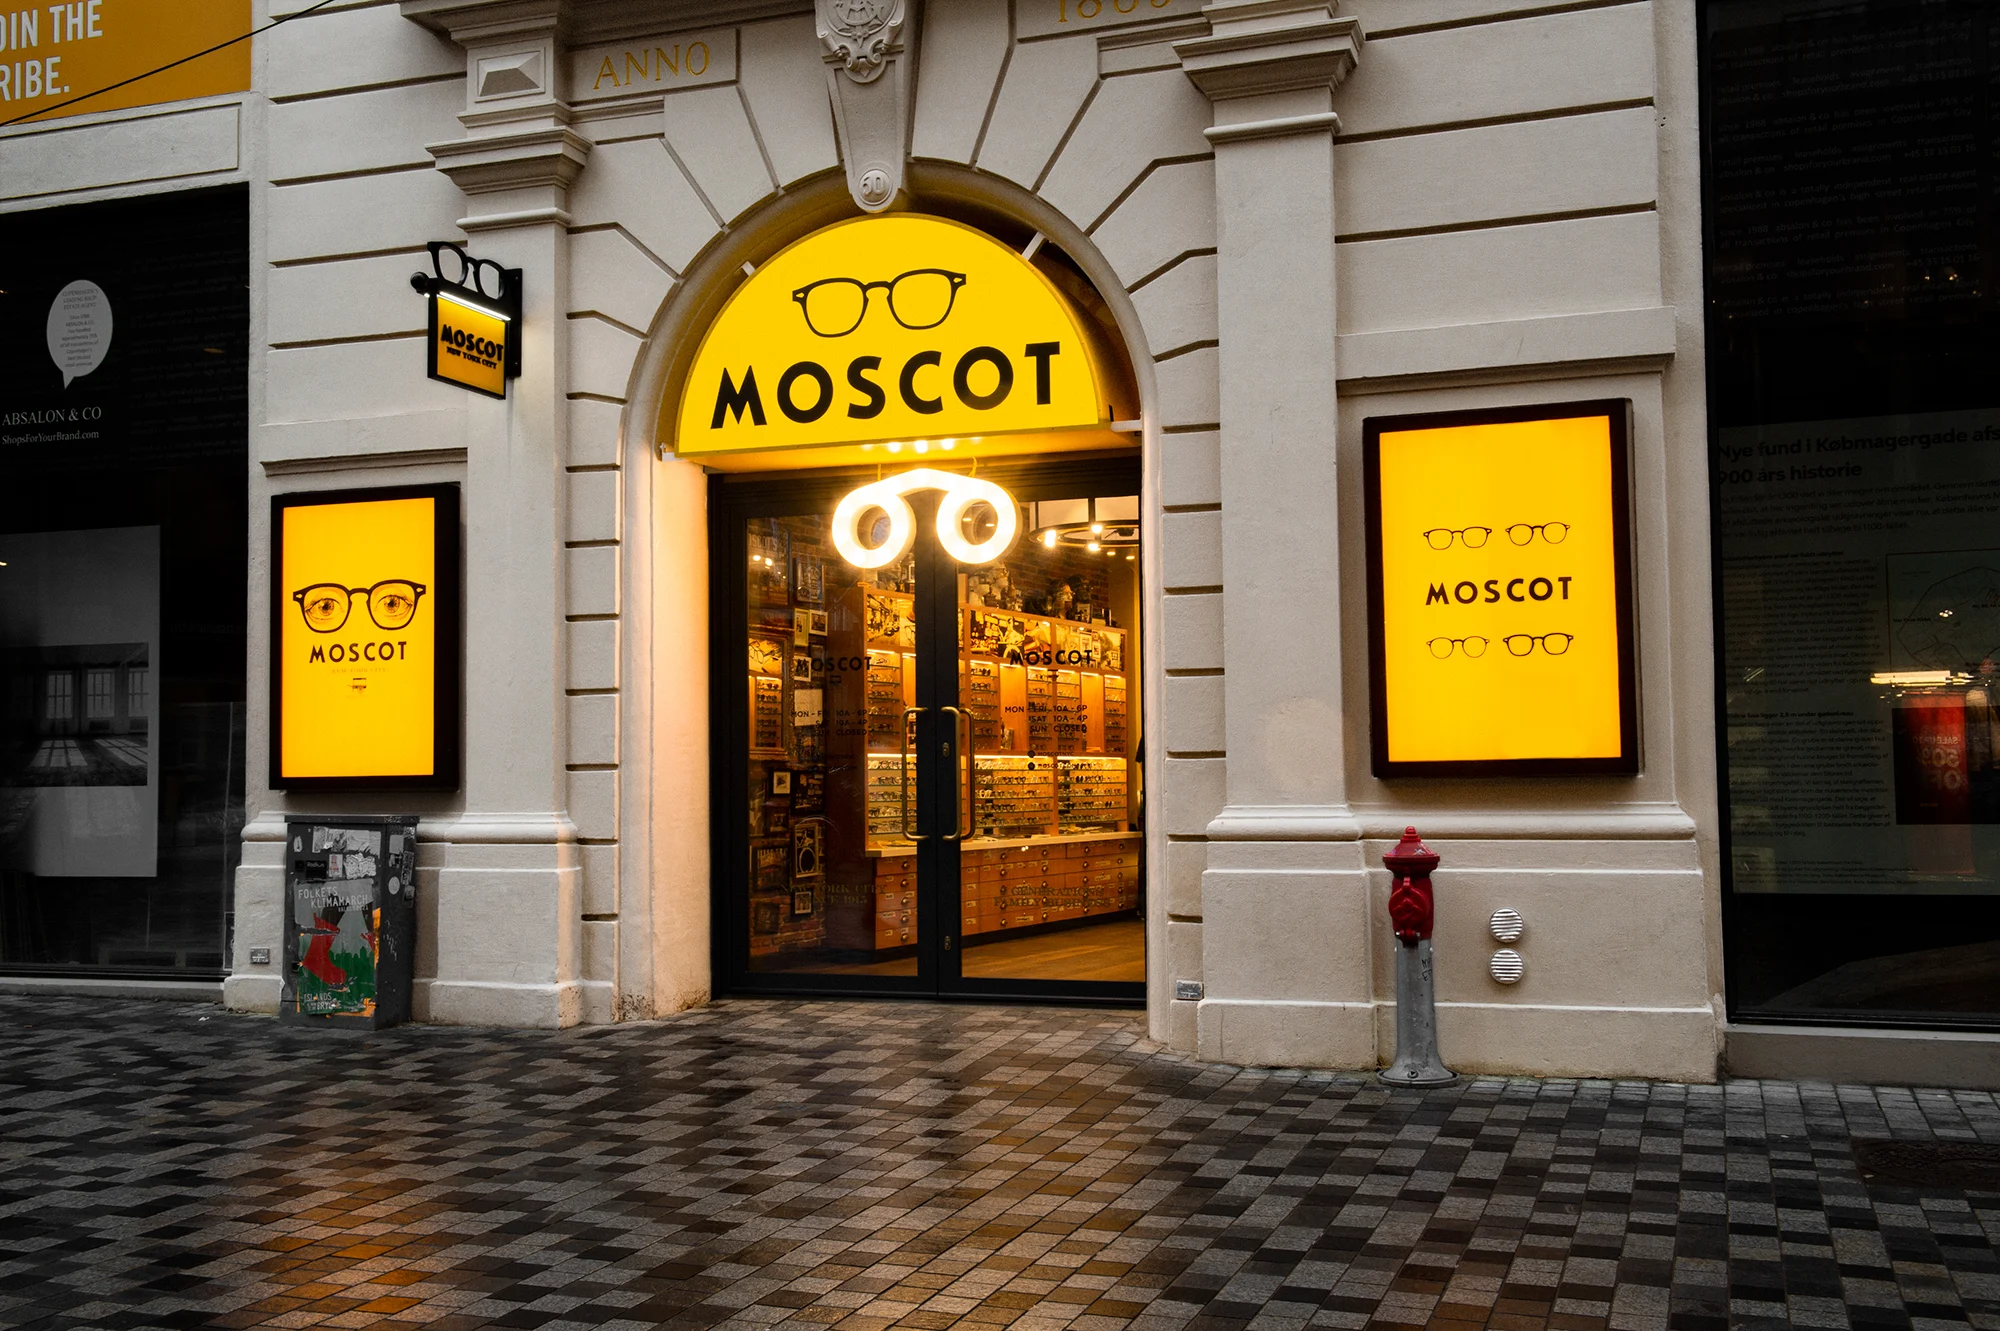 The MOSCOT Copenhagen Shop exterior